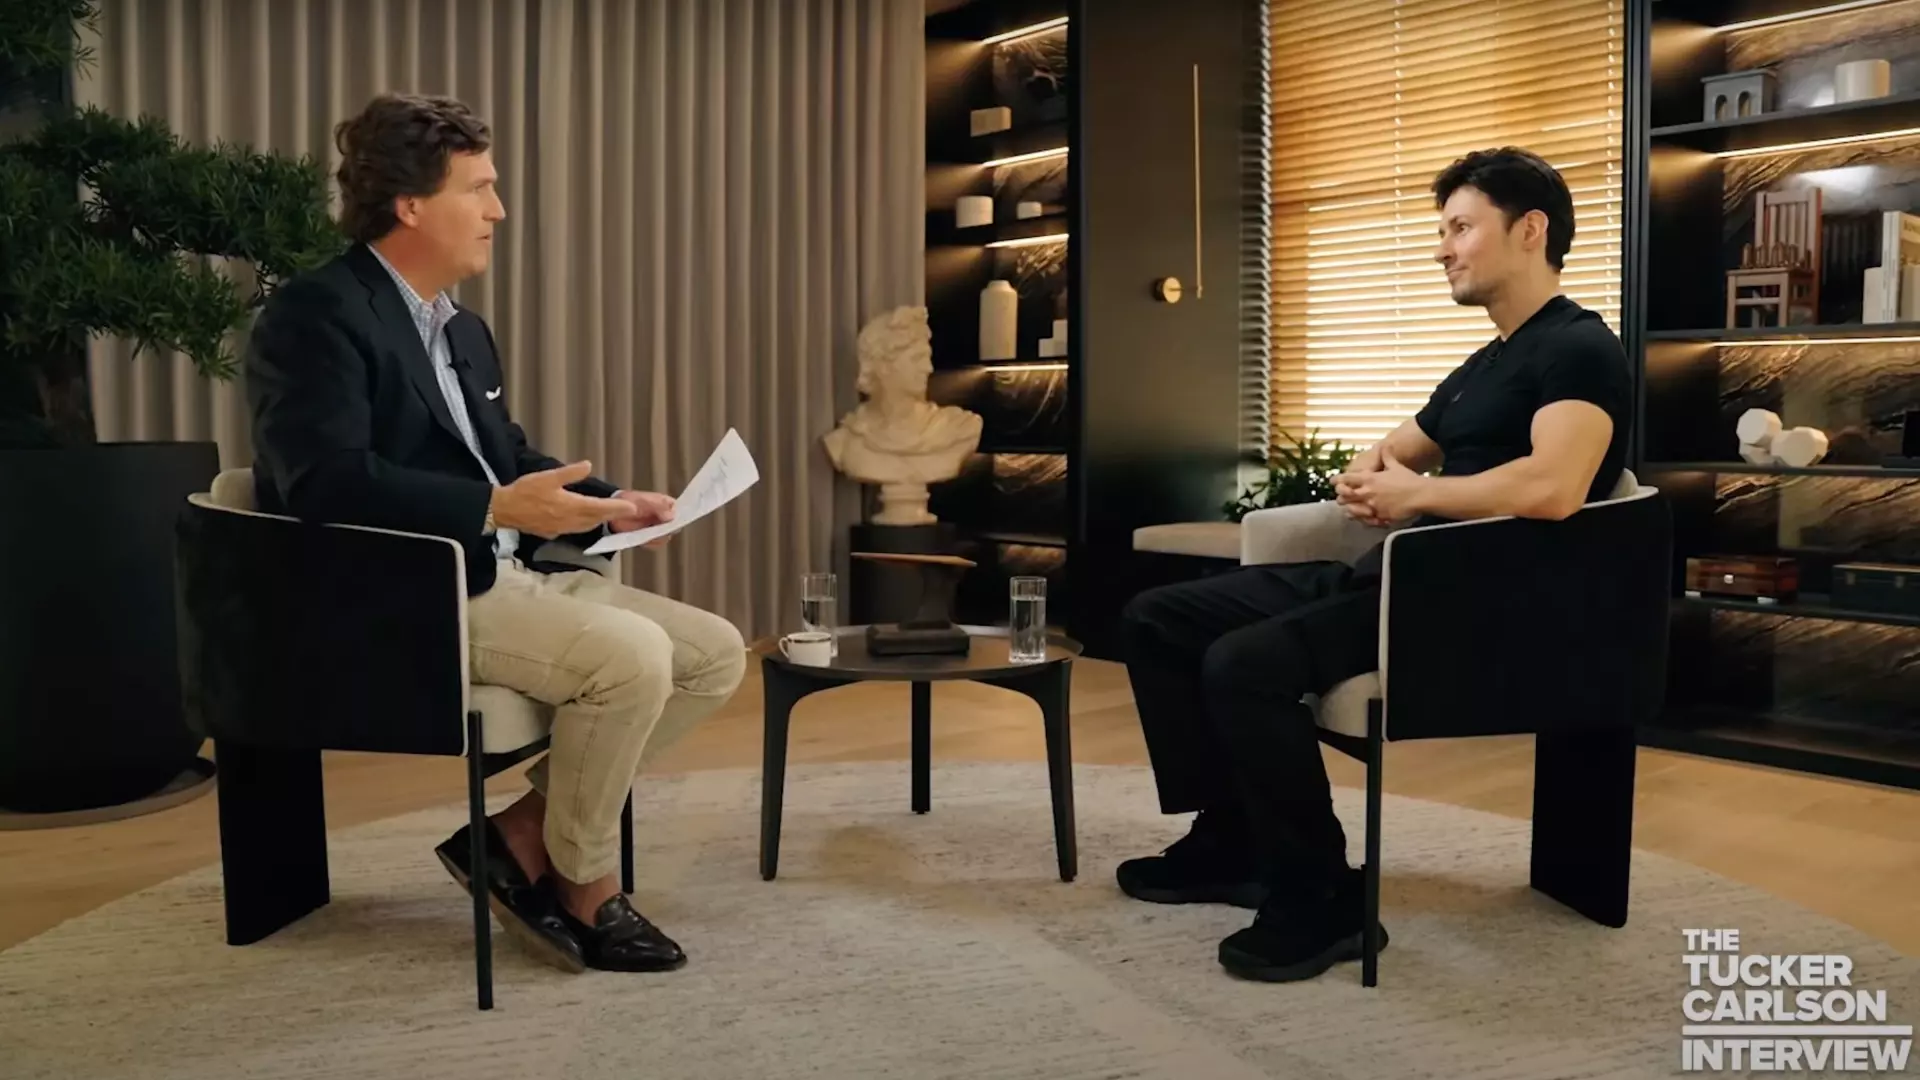 Павел Дуров дал интервью американскому журналисту Карлсону. Собрали главное